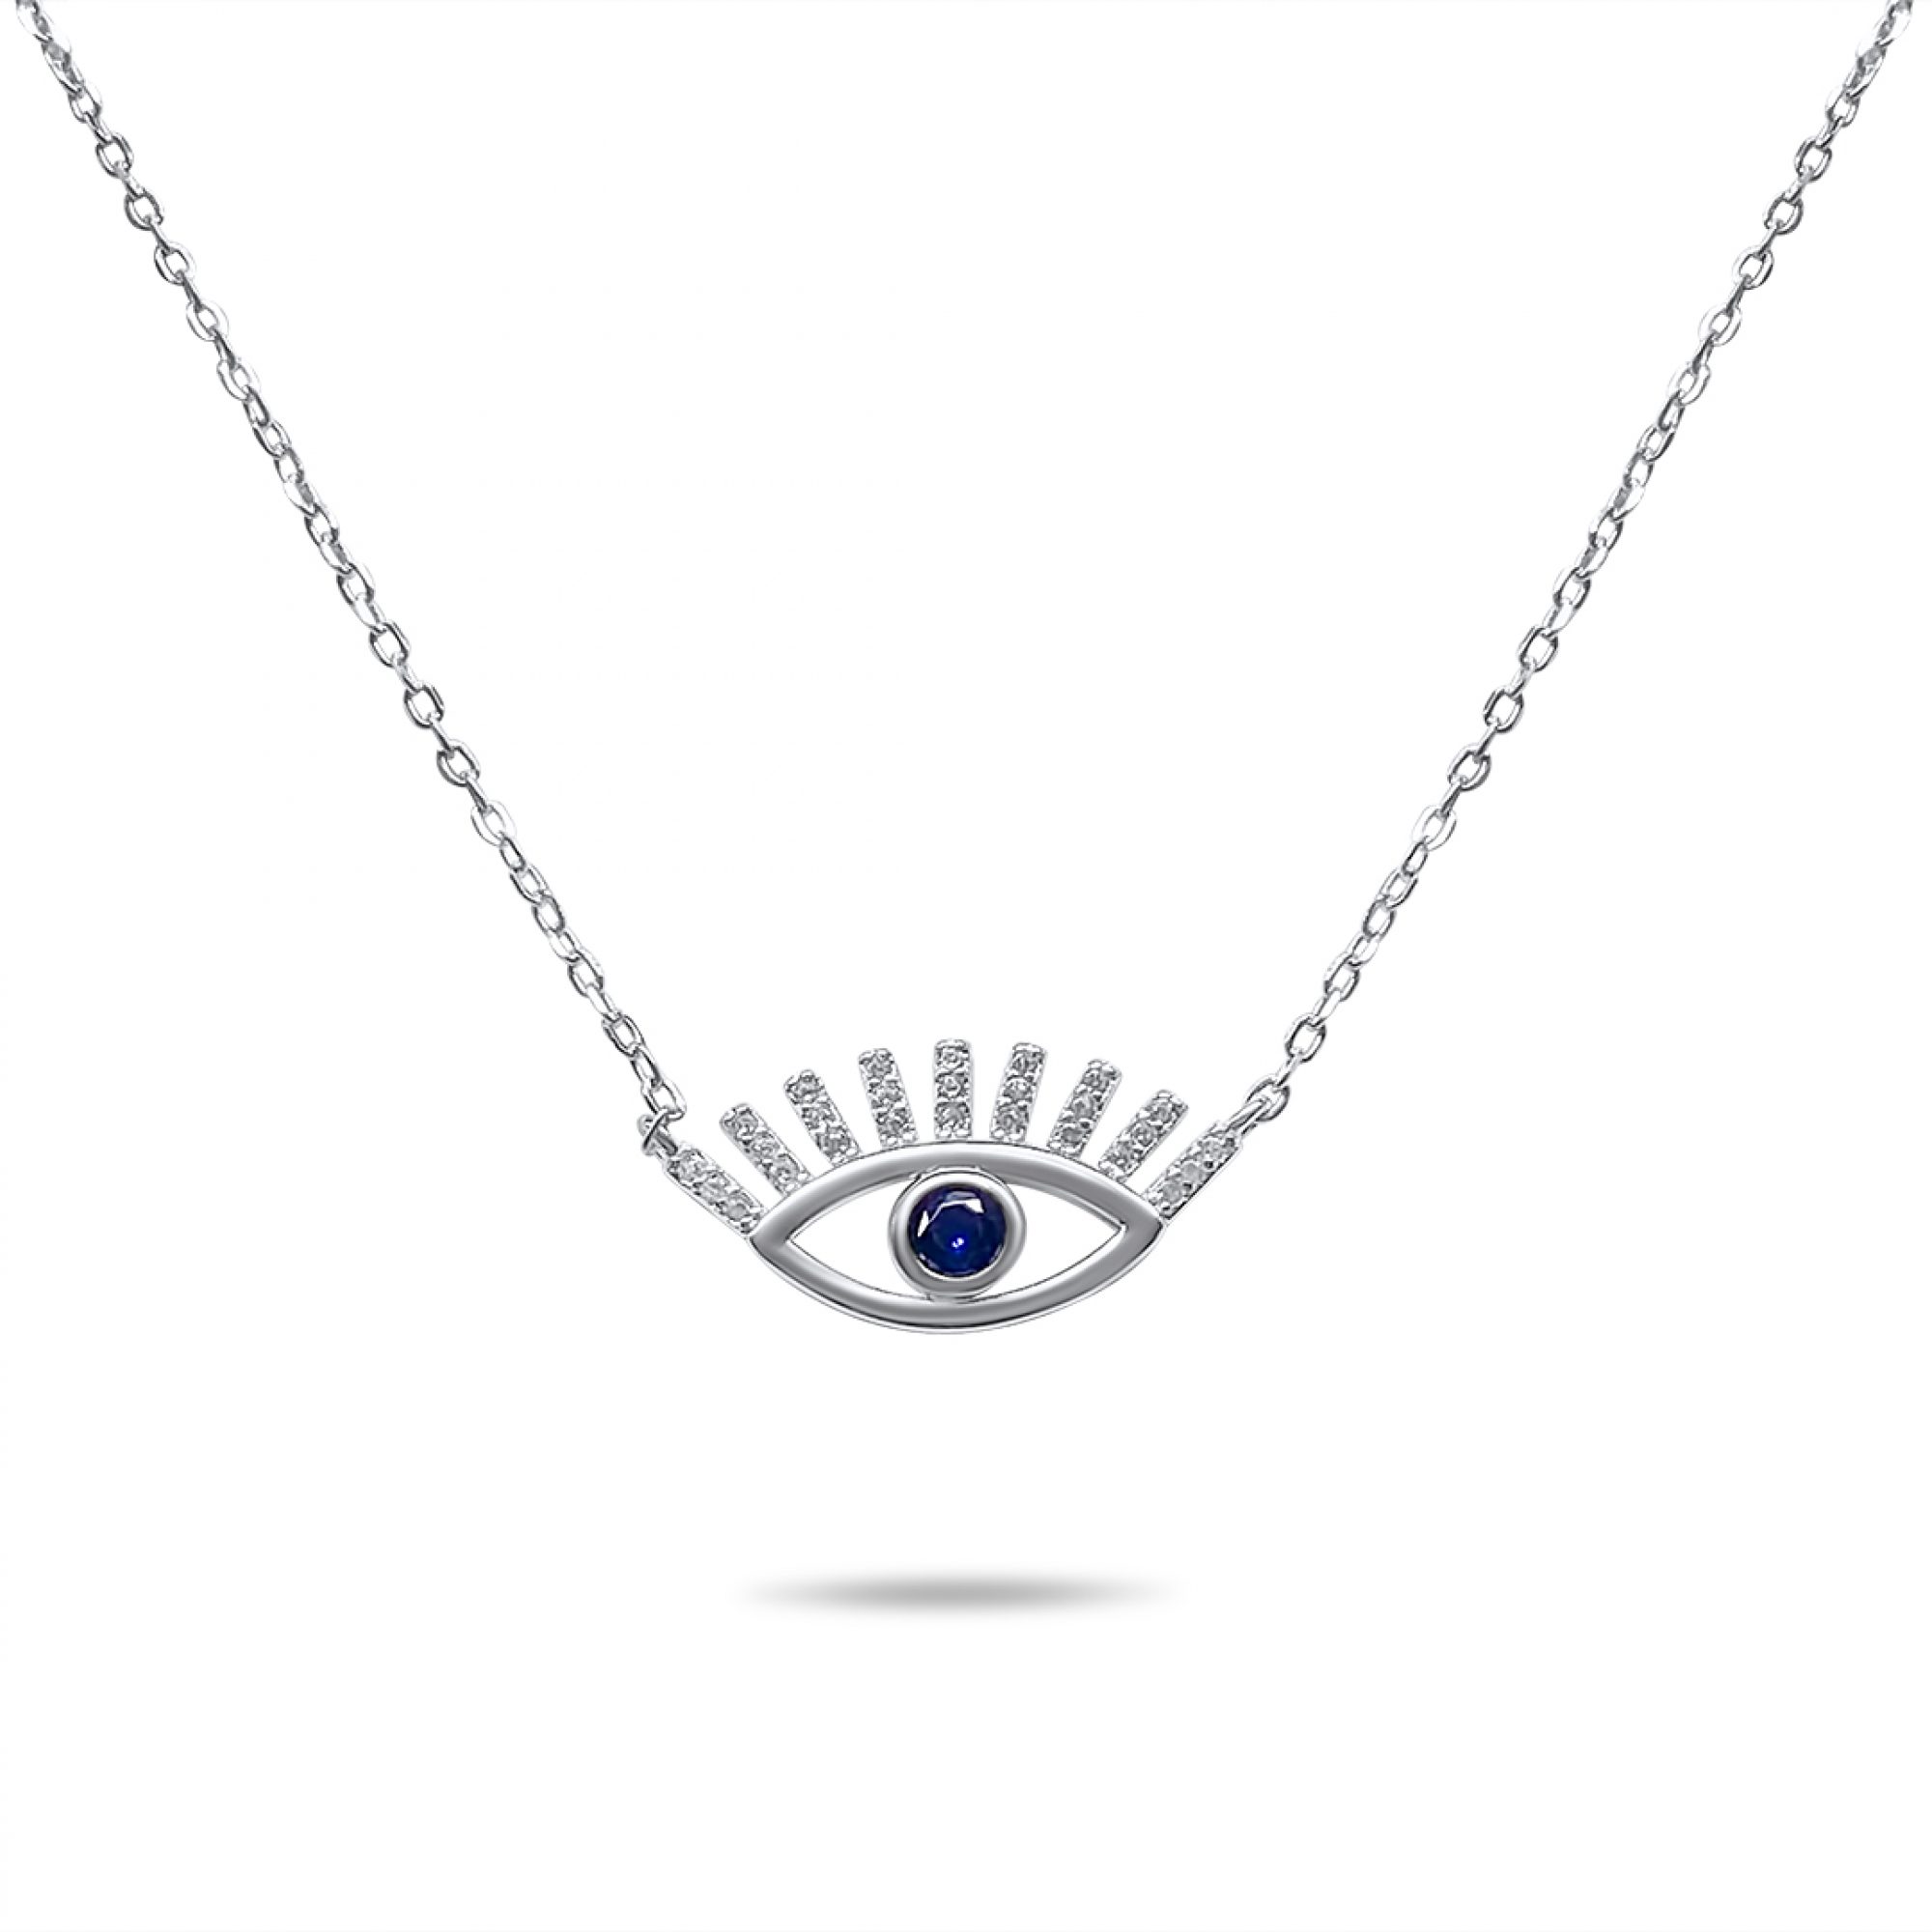 Eye necklace with zircon stones 